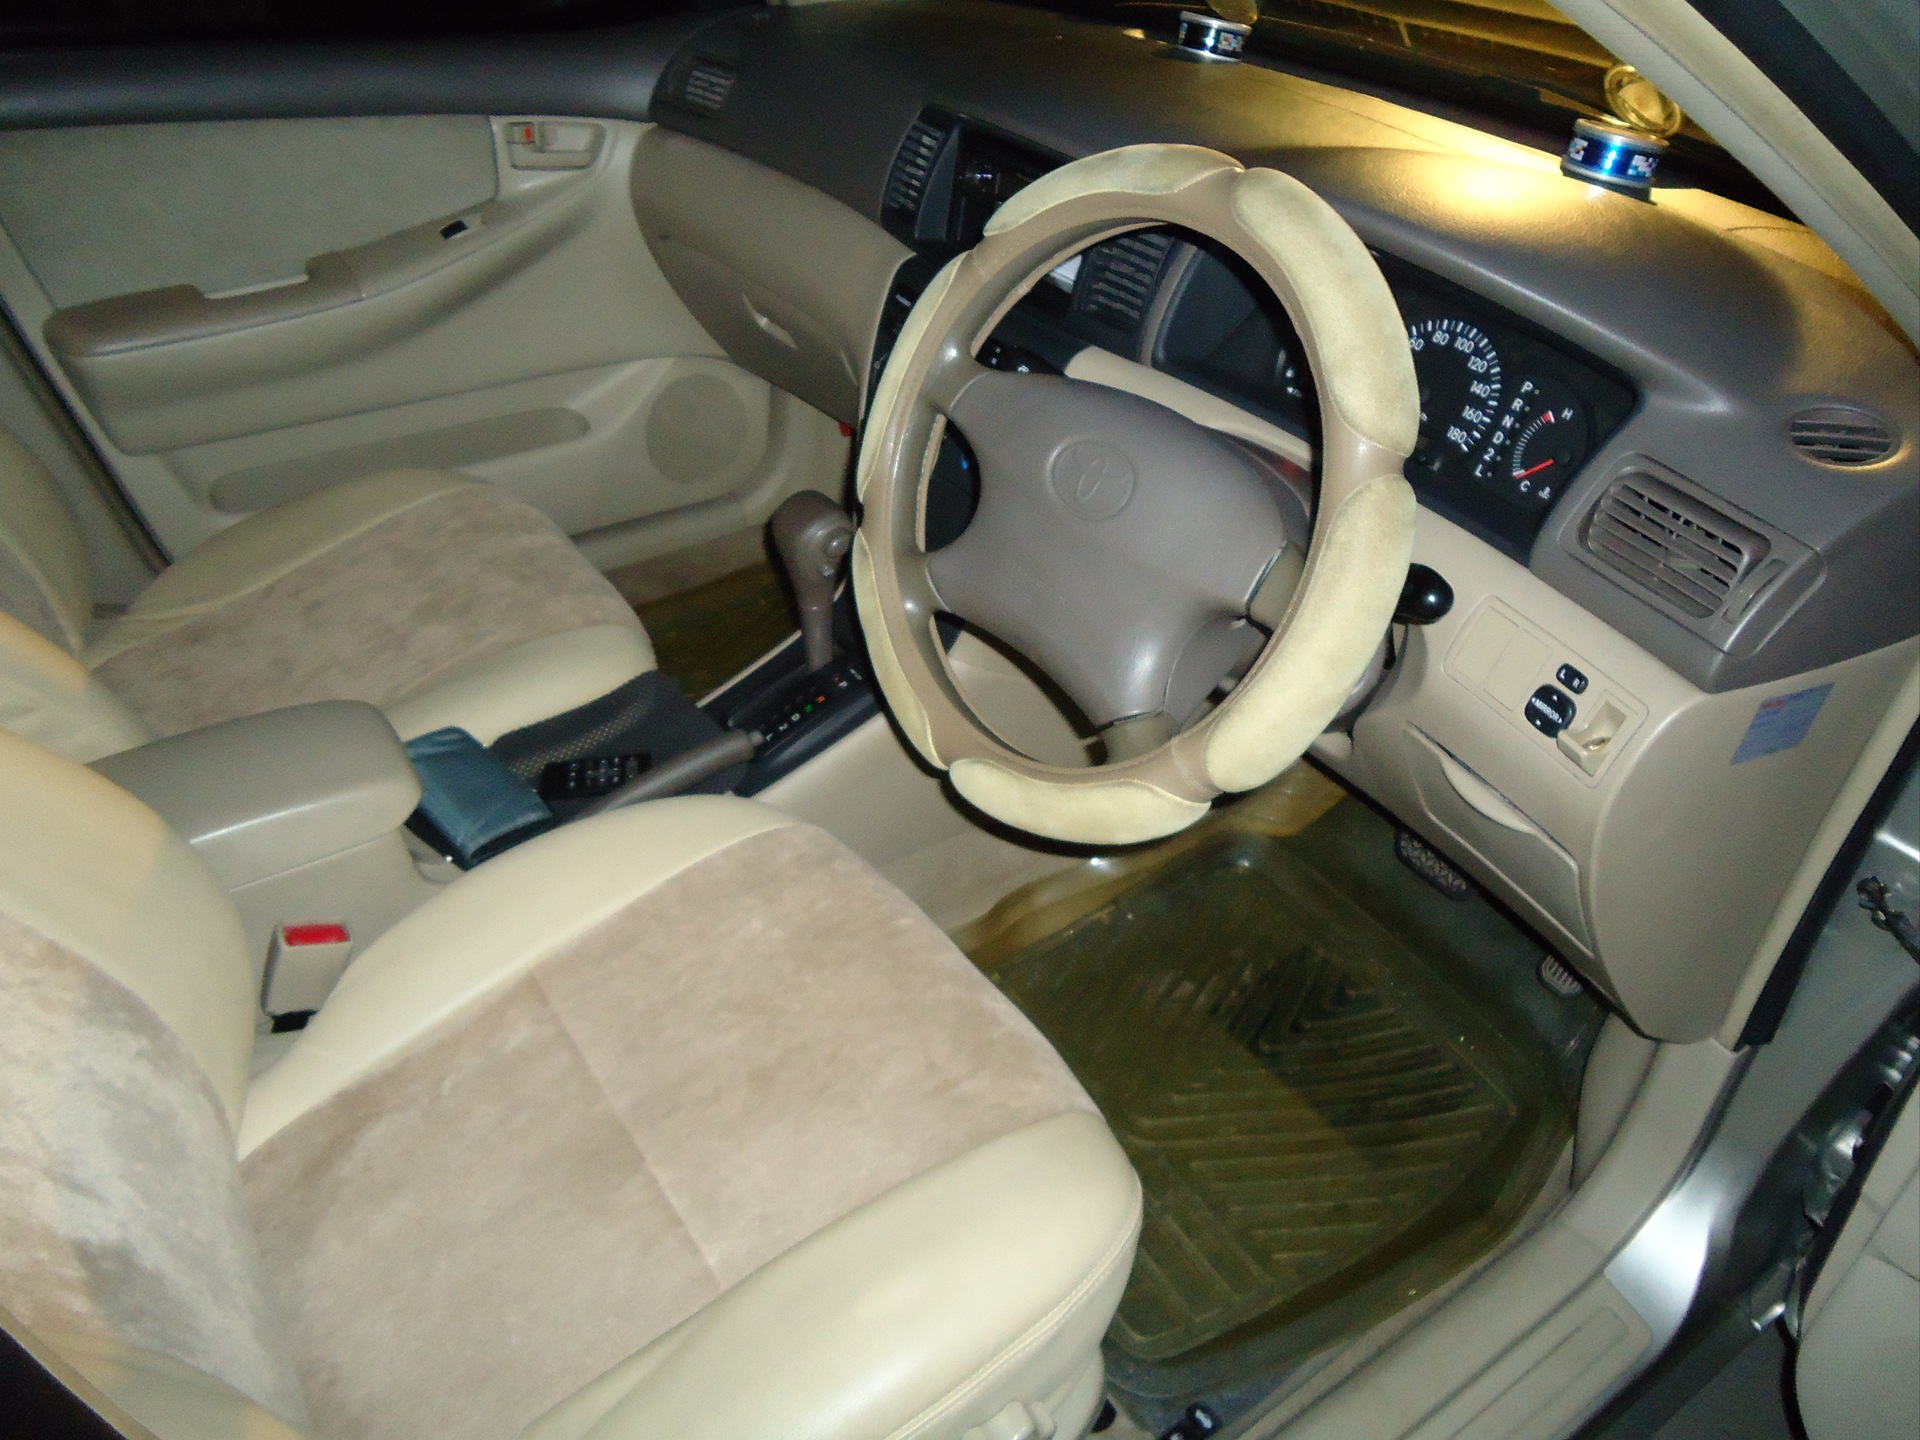 Salon - Toyota Corolla 05L 2001